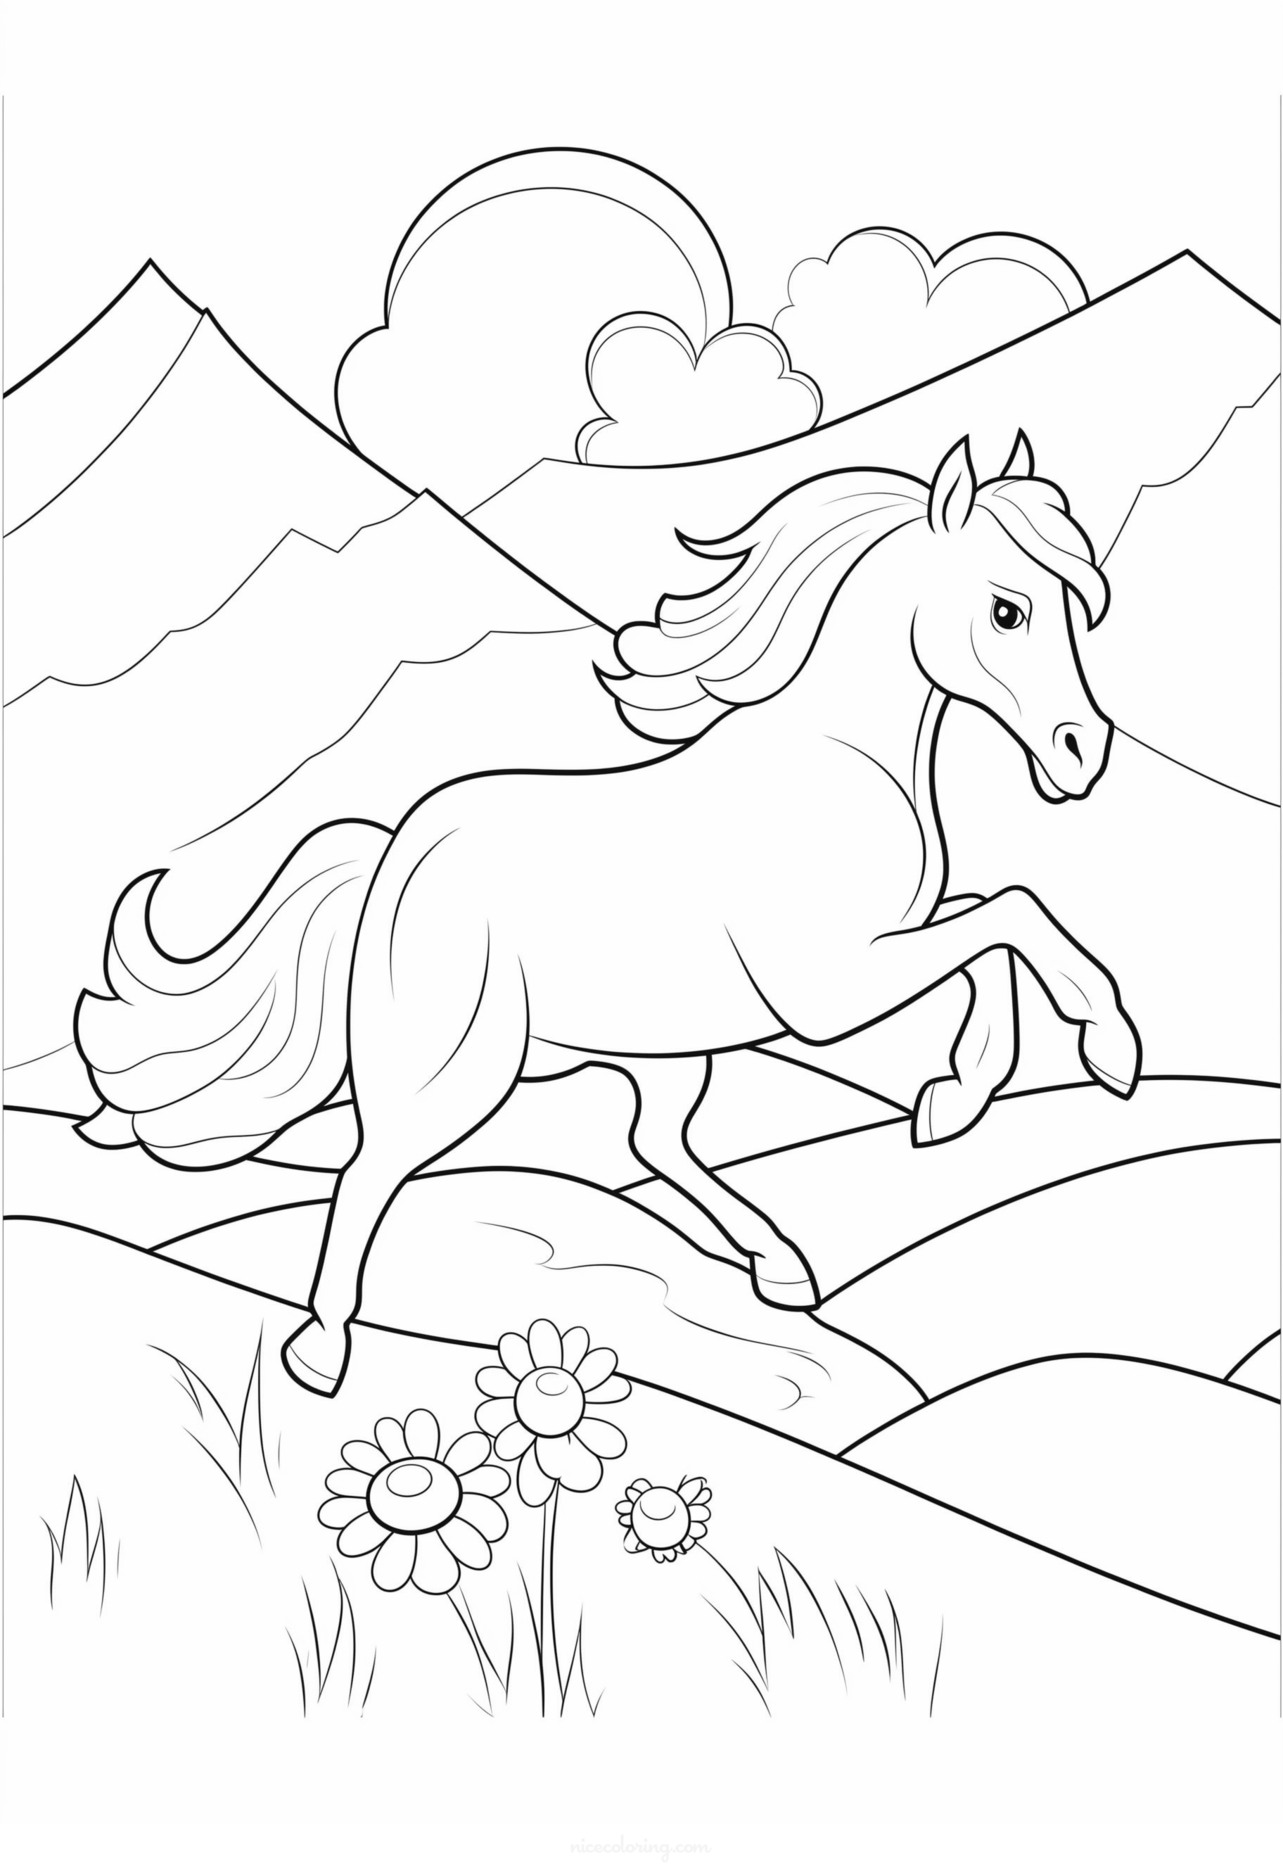 野原に立つ馬の塗り絵。